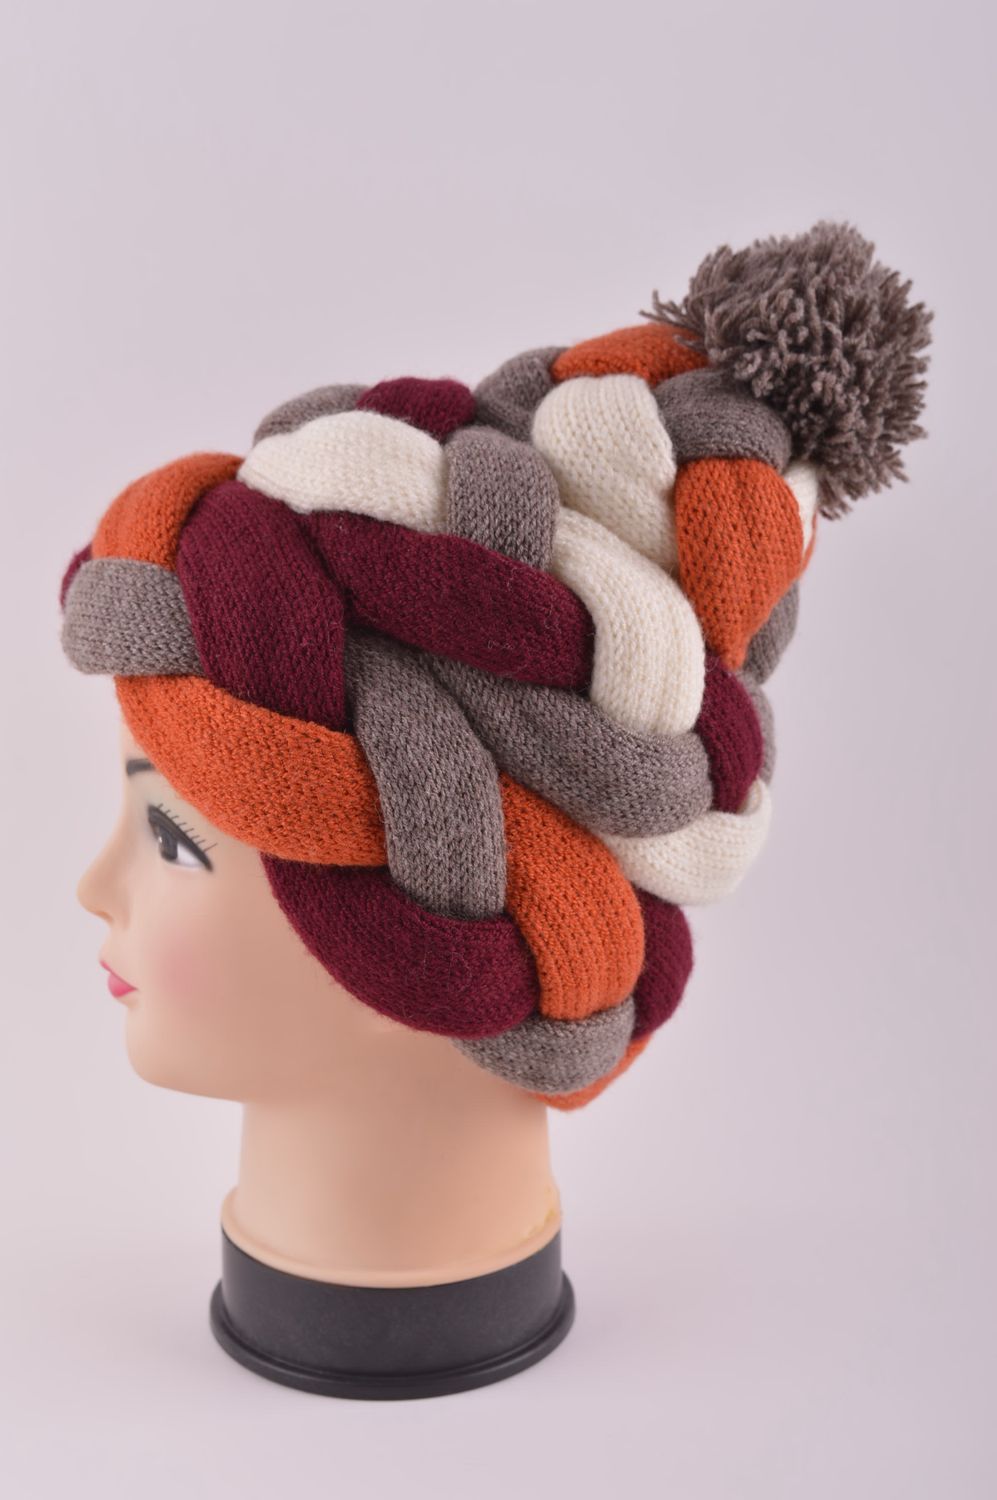 Головной убор хэнд мэйд зимняя женская шапка плетеная модная зимняя шапка фото 3